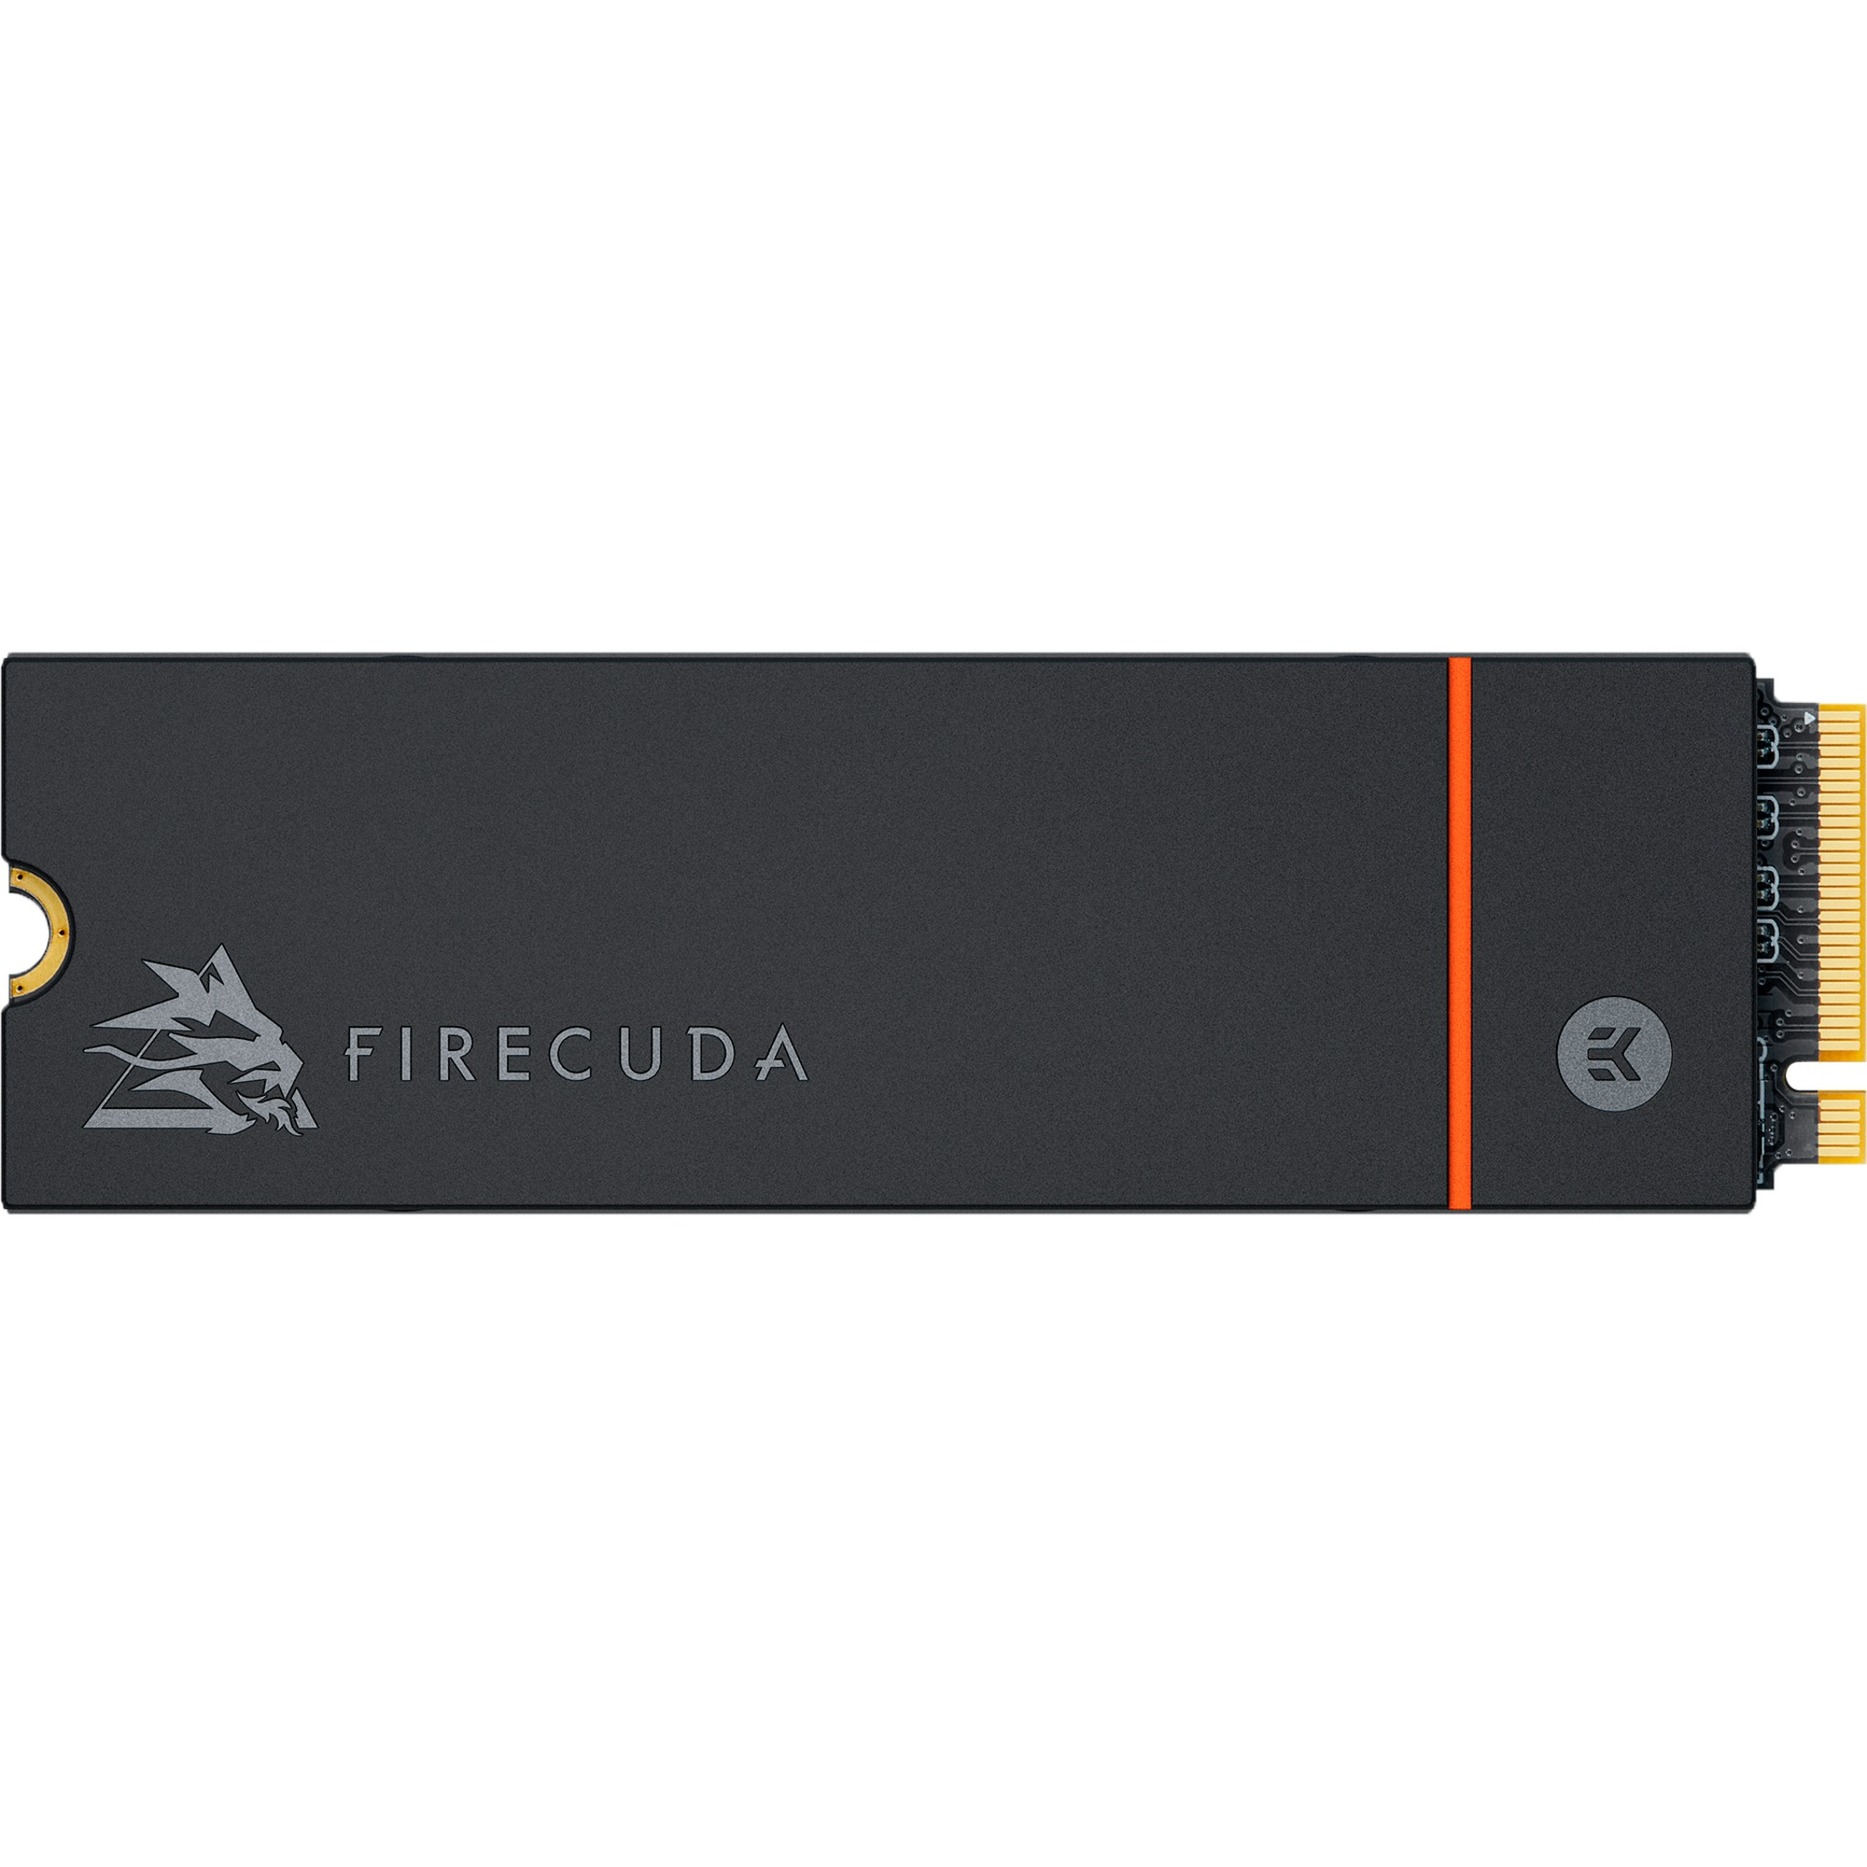 Image of Alternate - FireCuda 530 2 TB mit Kühlkörper, SSD online einkaufen bei Alternate